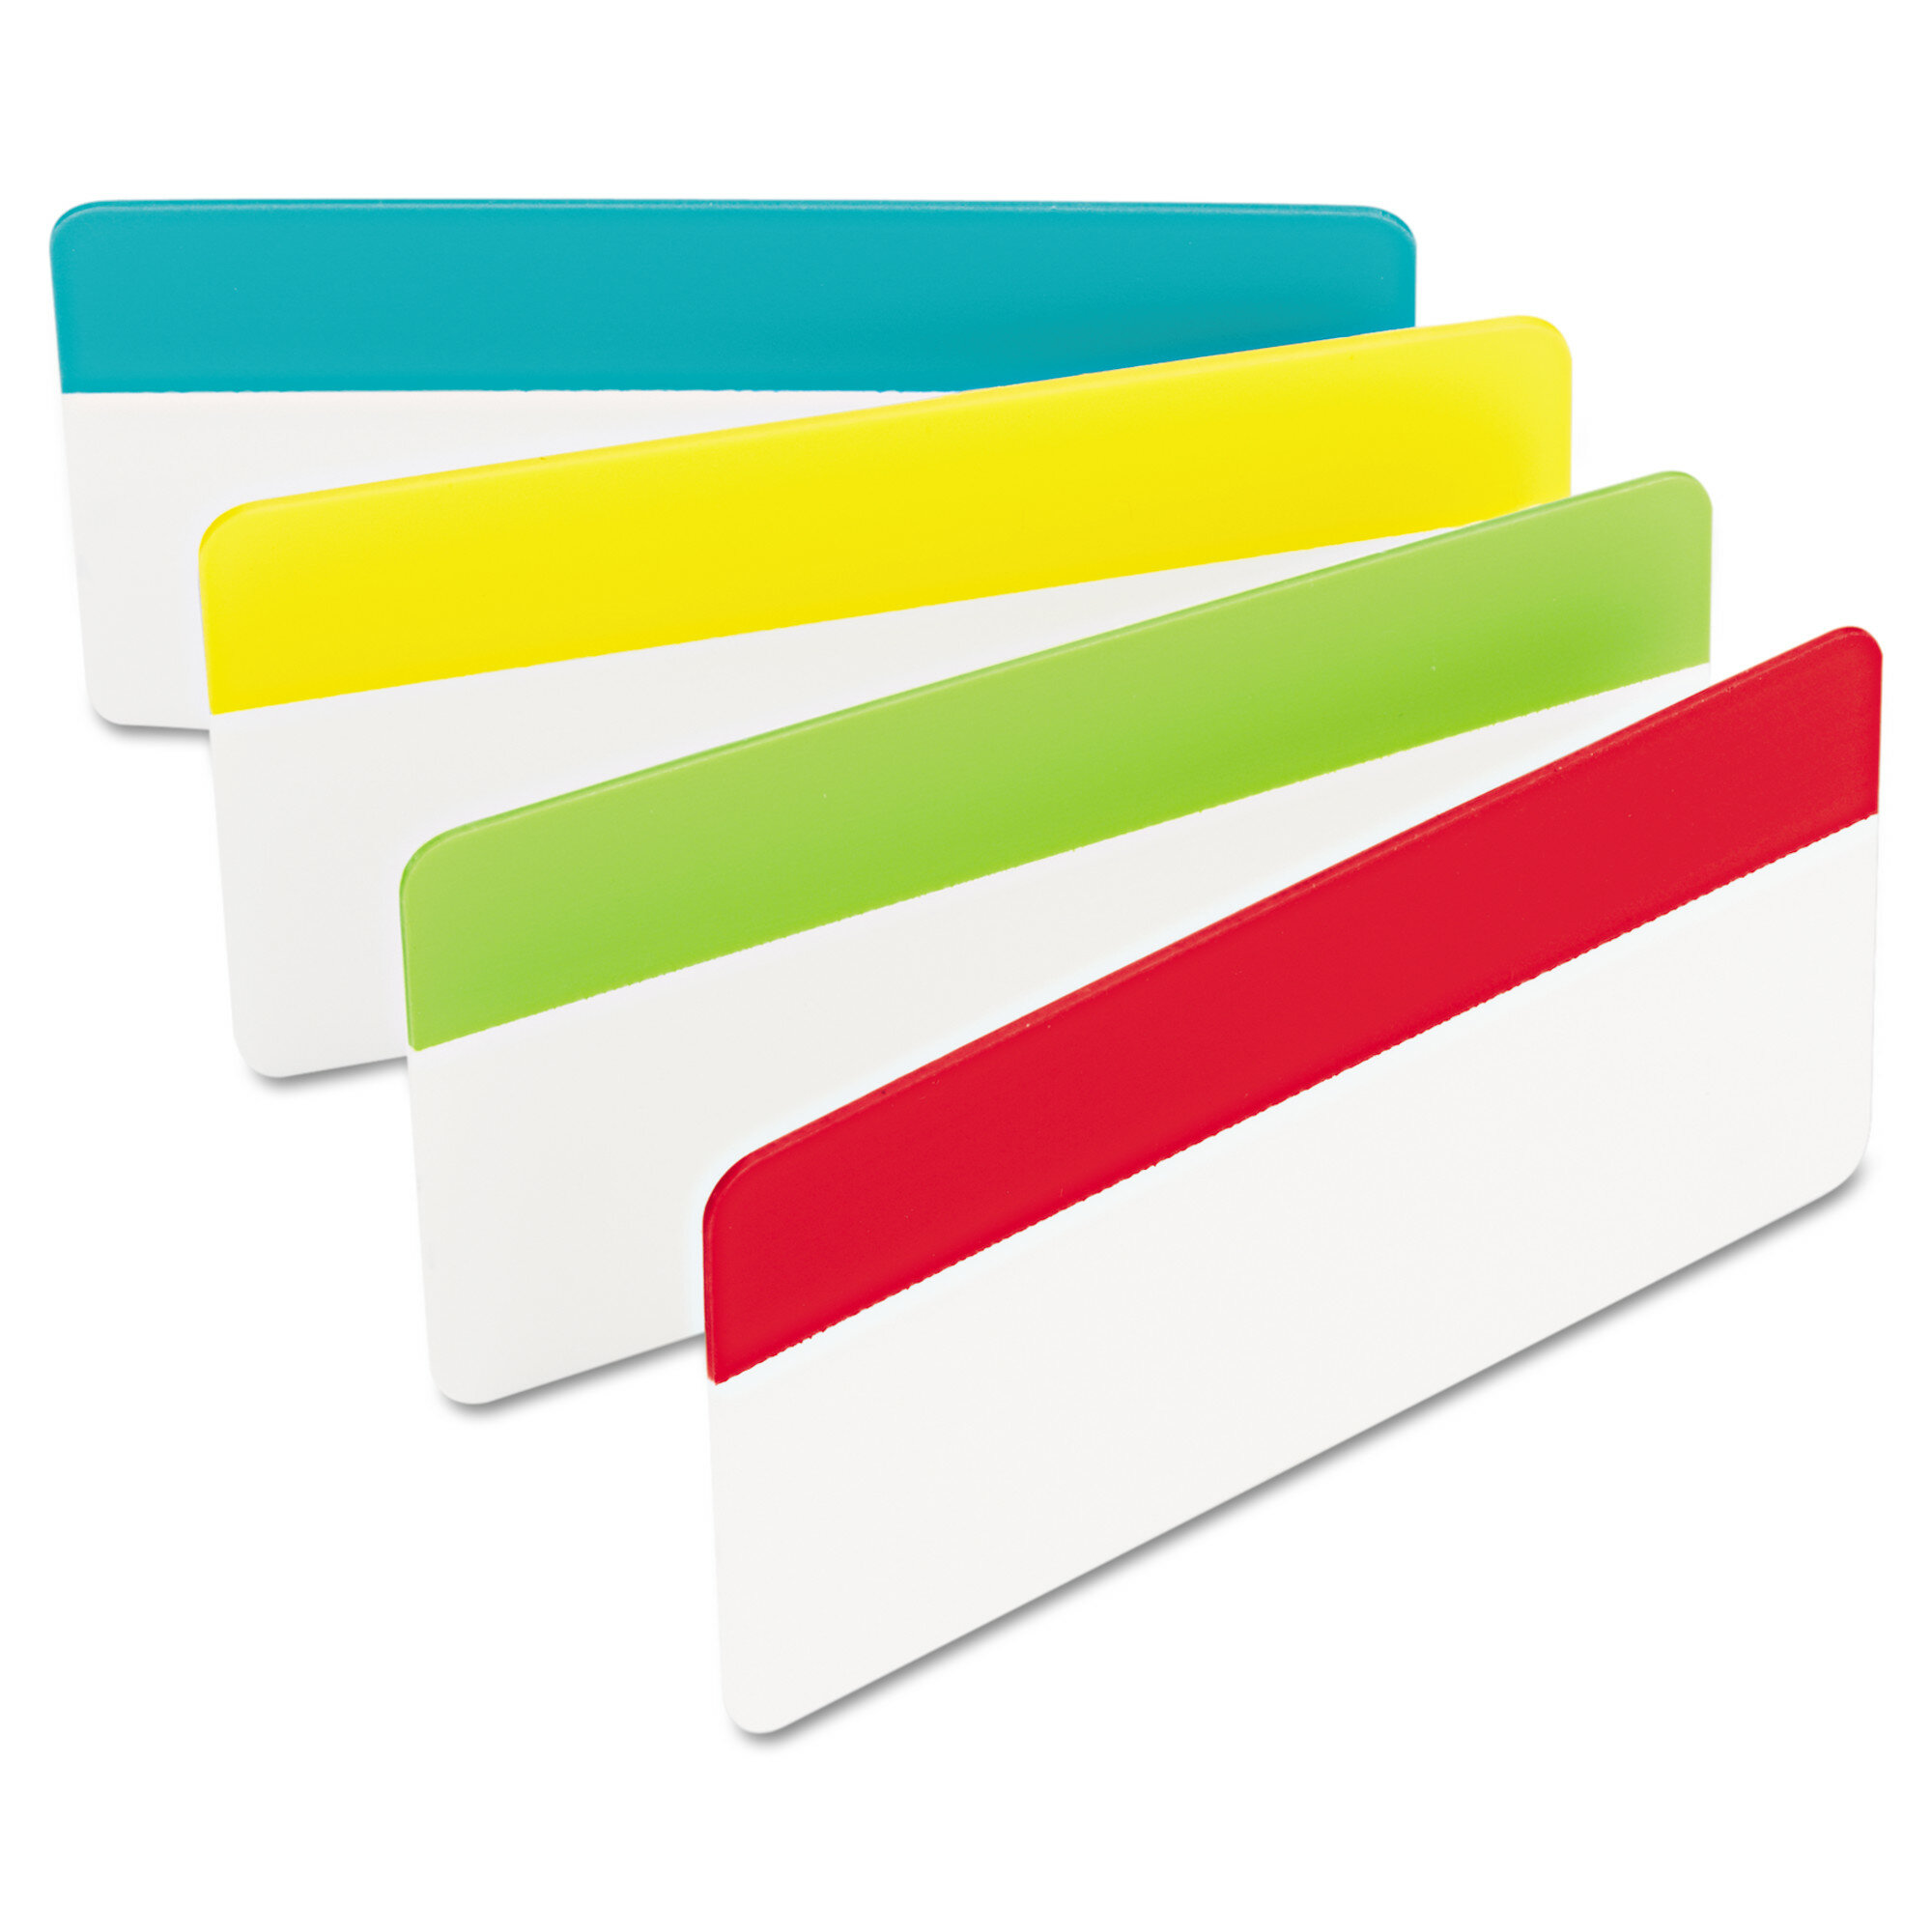 3M Post-it Paper & Cardstock File Tab Labels & Reviews